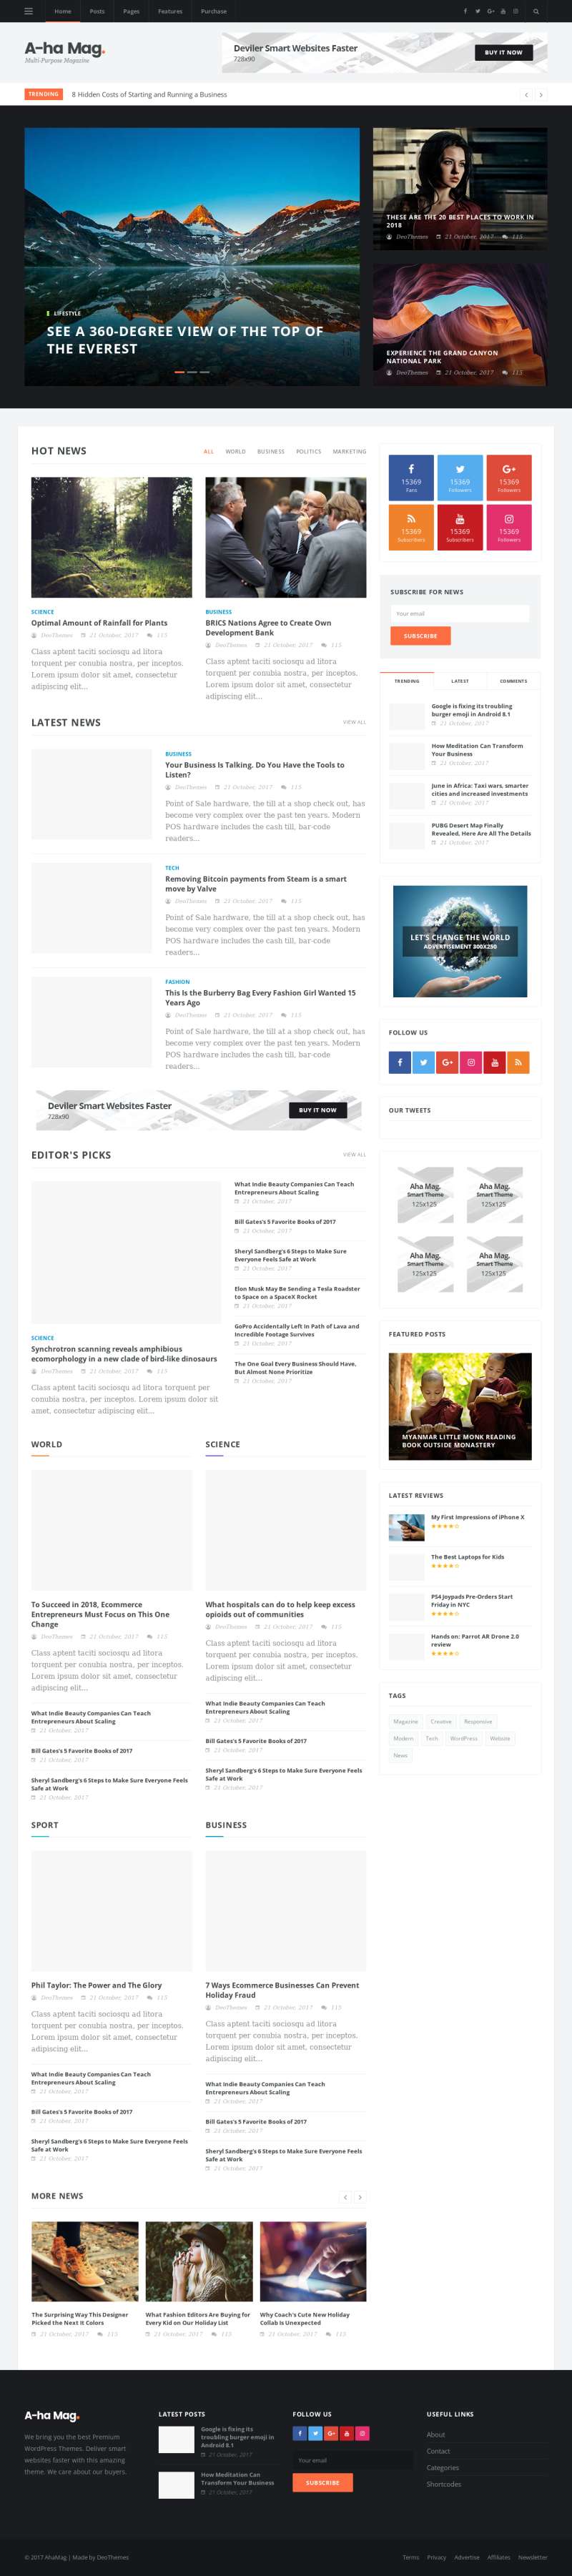 黑色的新闻资讯图片博客网站响应式模板